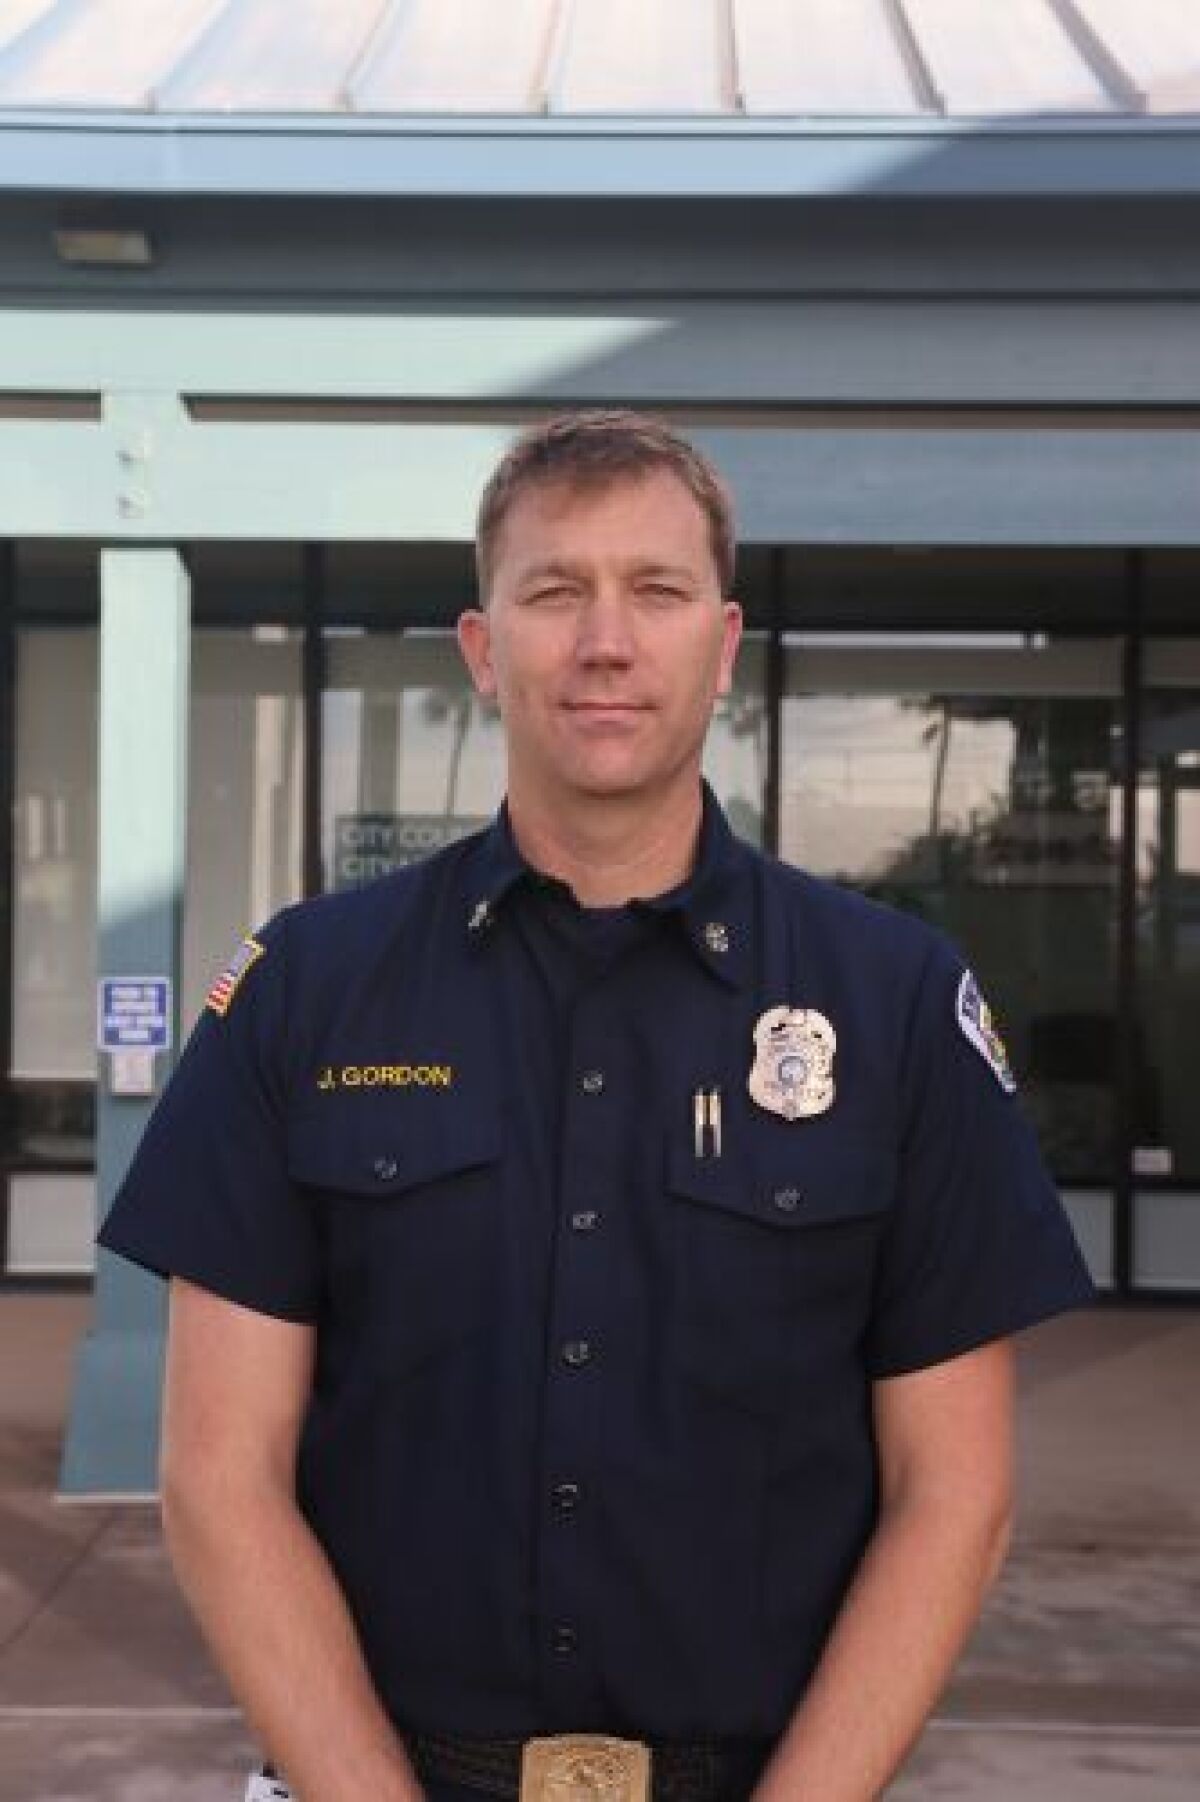 Encinitas Fire Chief Josh Gordon